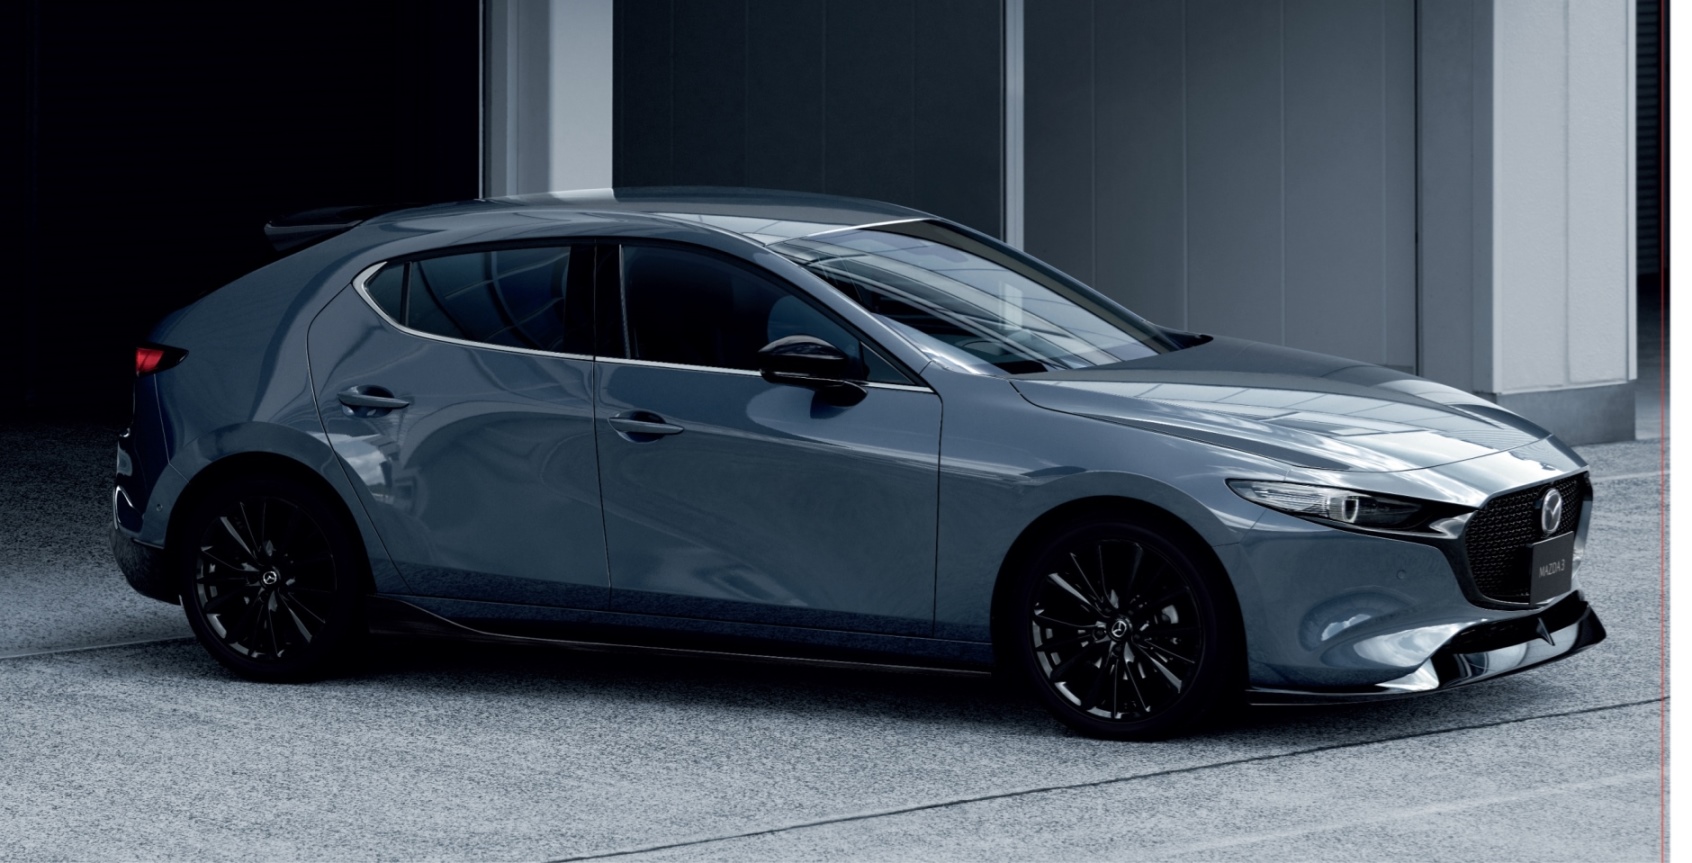 มอเตอร์โชว์ 2020 : Mazda เผยยอดจองรถในงานพุ่งกว่าพันคันภายในไม่ถึงสัปดาห์